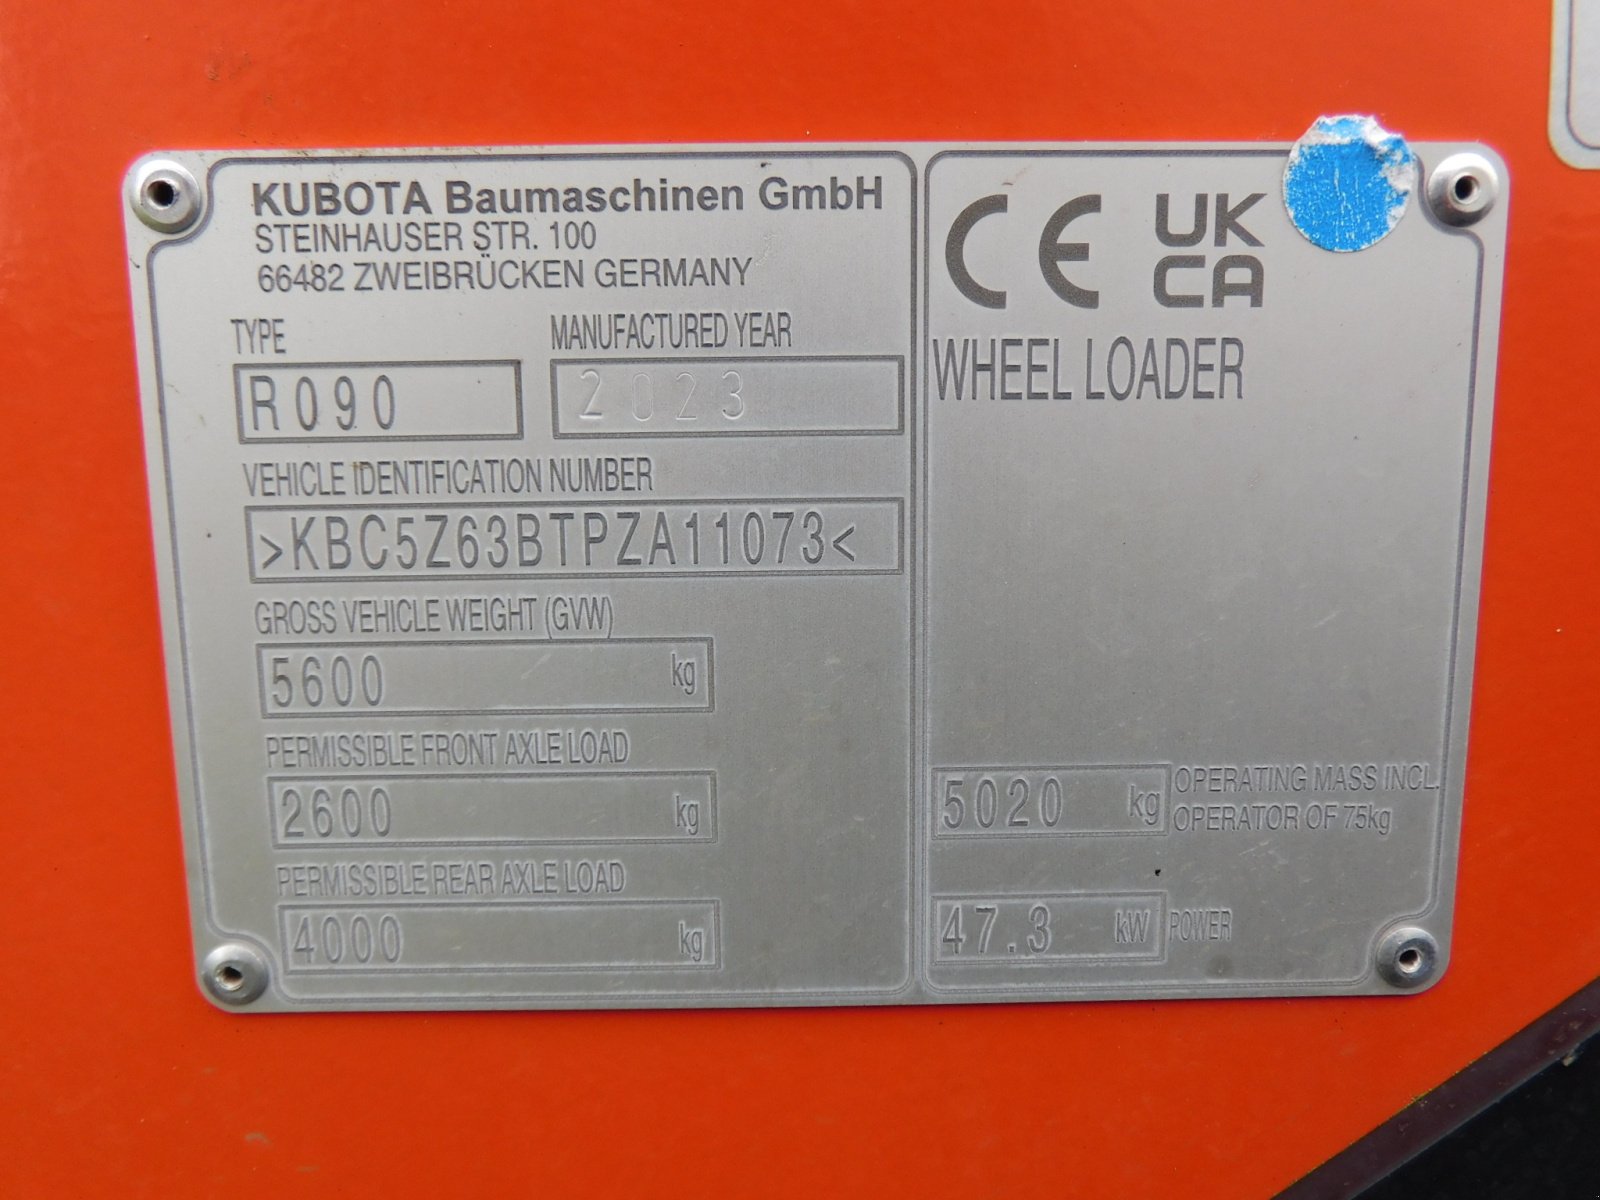 Radlader des Typs Kubota R090 *CRS *DPF *Schaufel 0,9m³ *Palettengabel 120cm *5020 kg Gewicht, Gebrauchtmaschine in Wagenfeld (Bild 7)